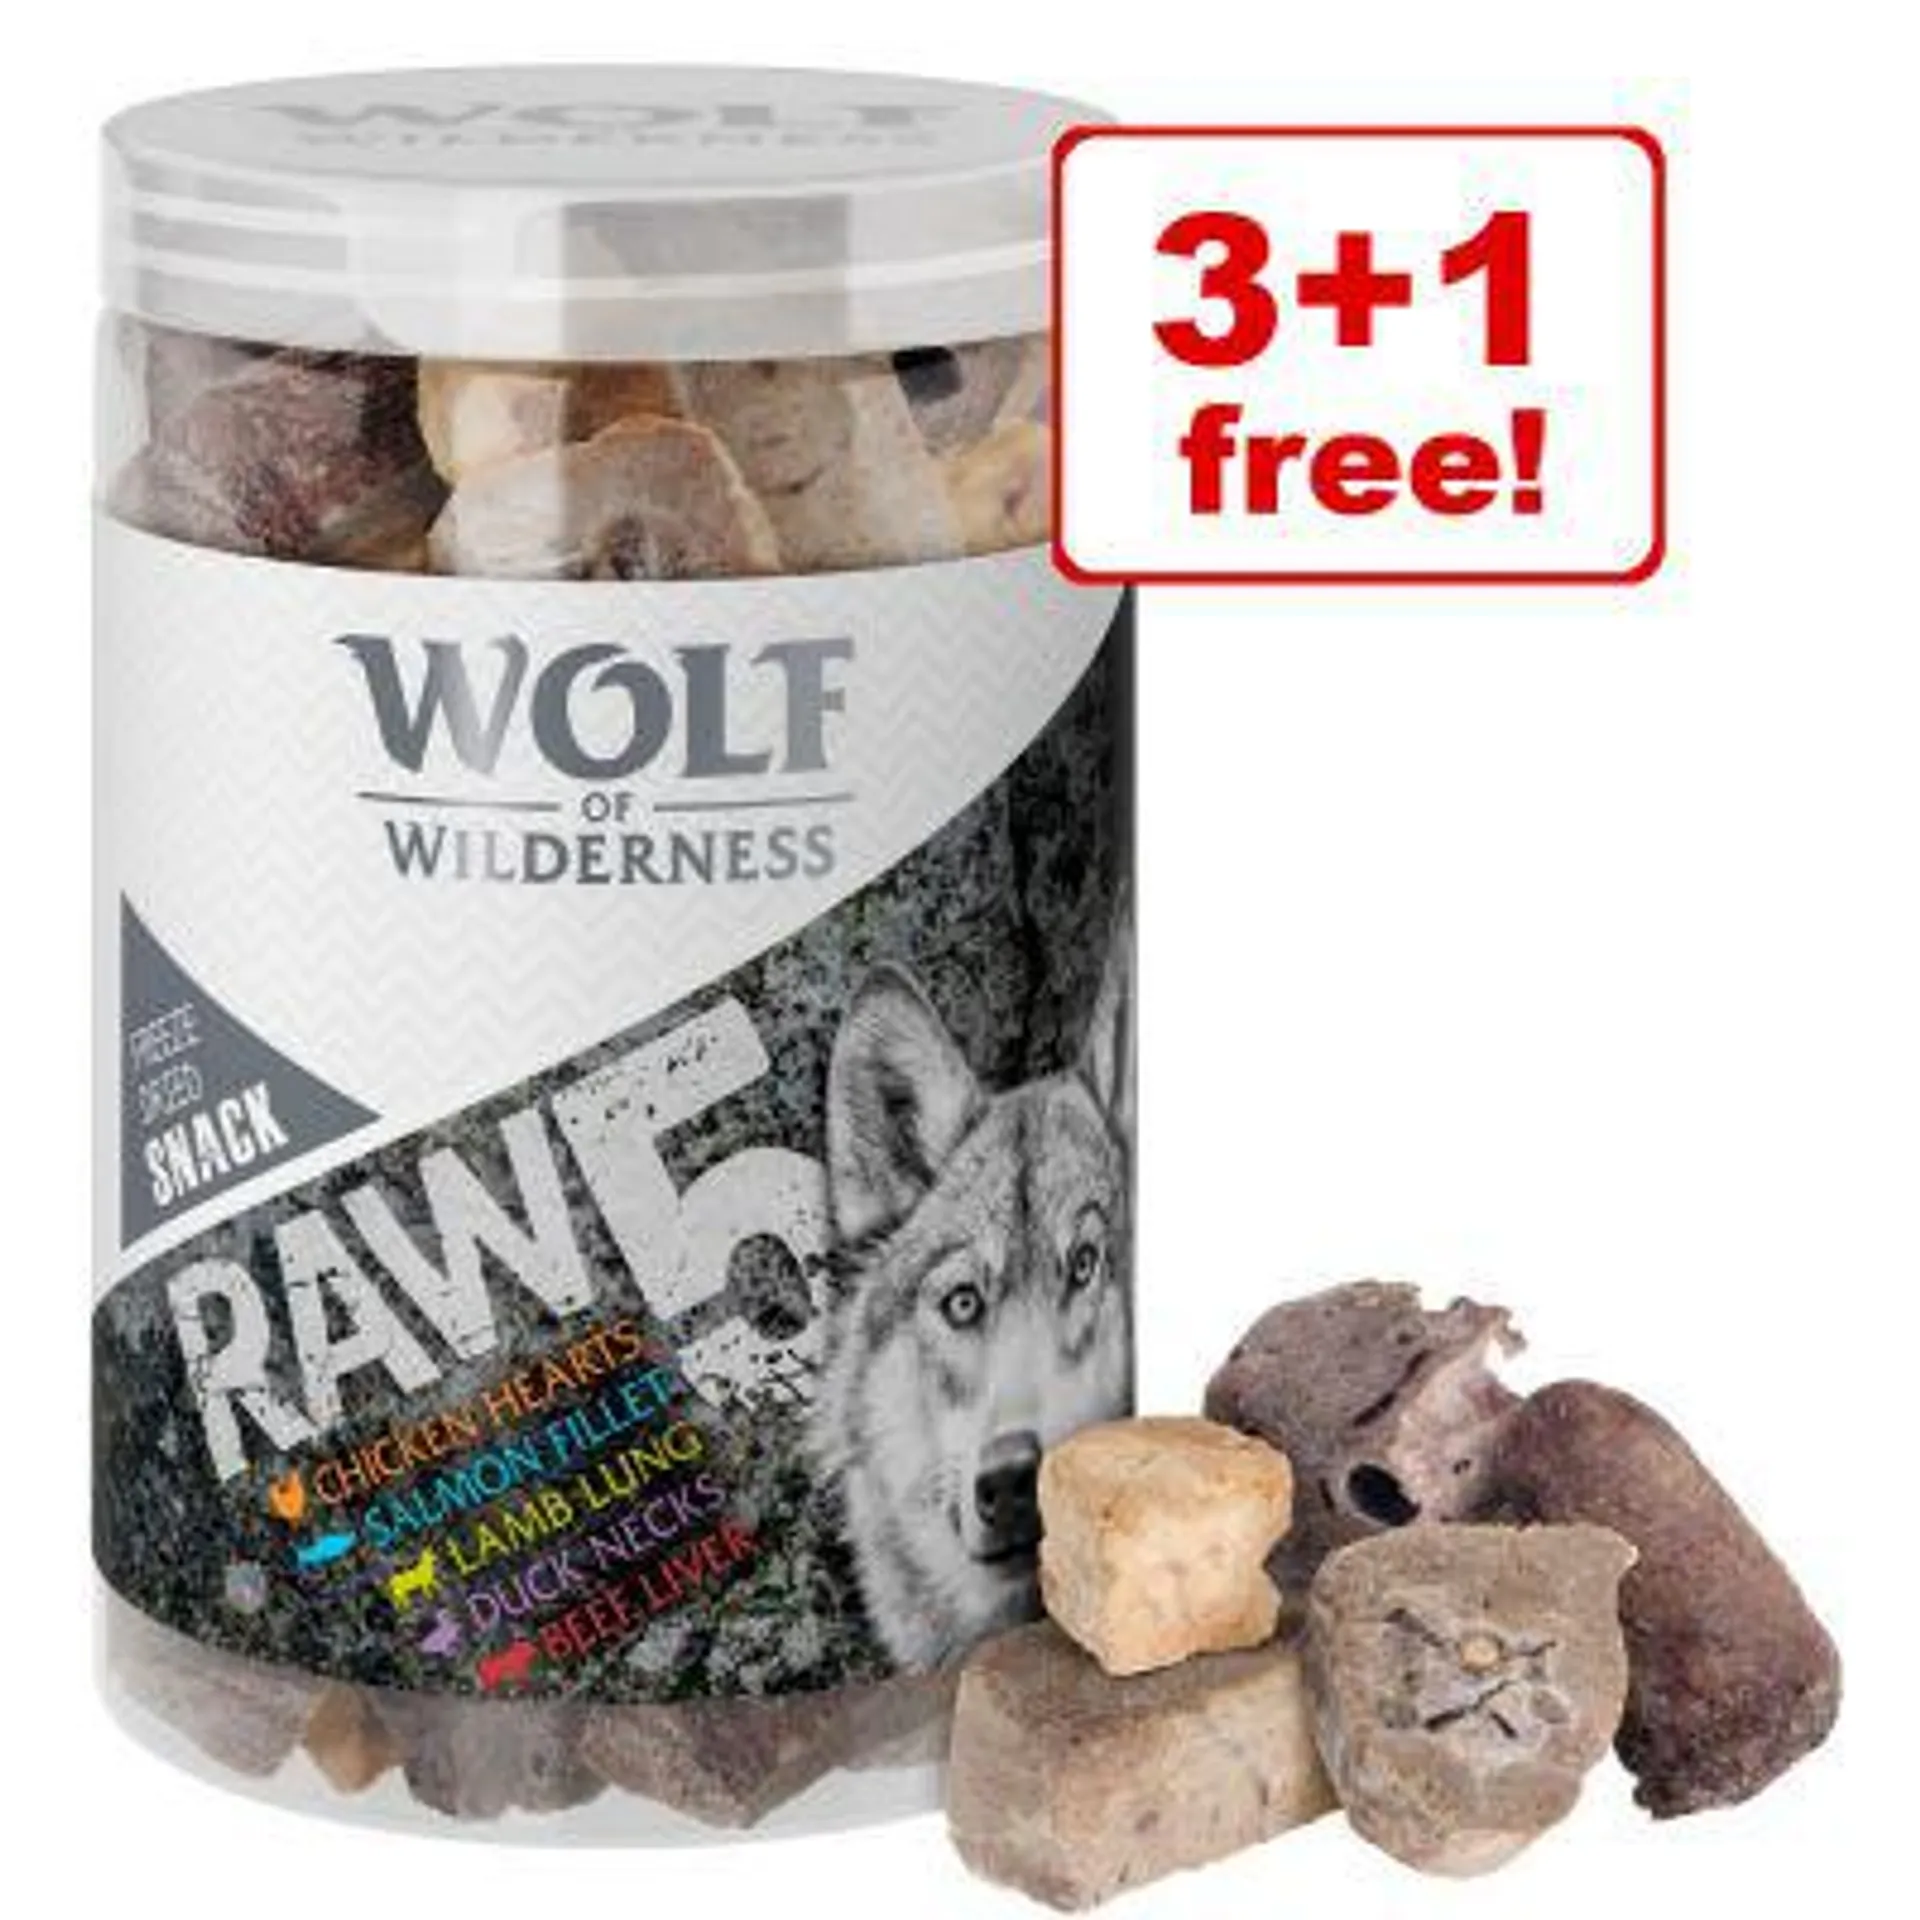 Wolf of Wilderness RAW Freeze-dried Dog Snacks - 3 + 1 Free!*